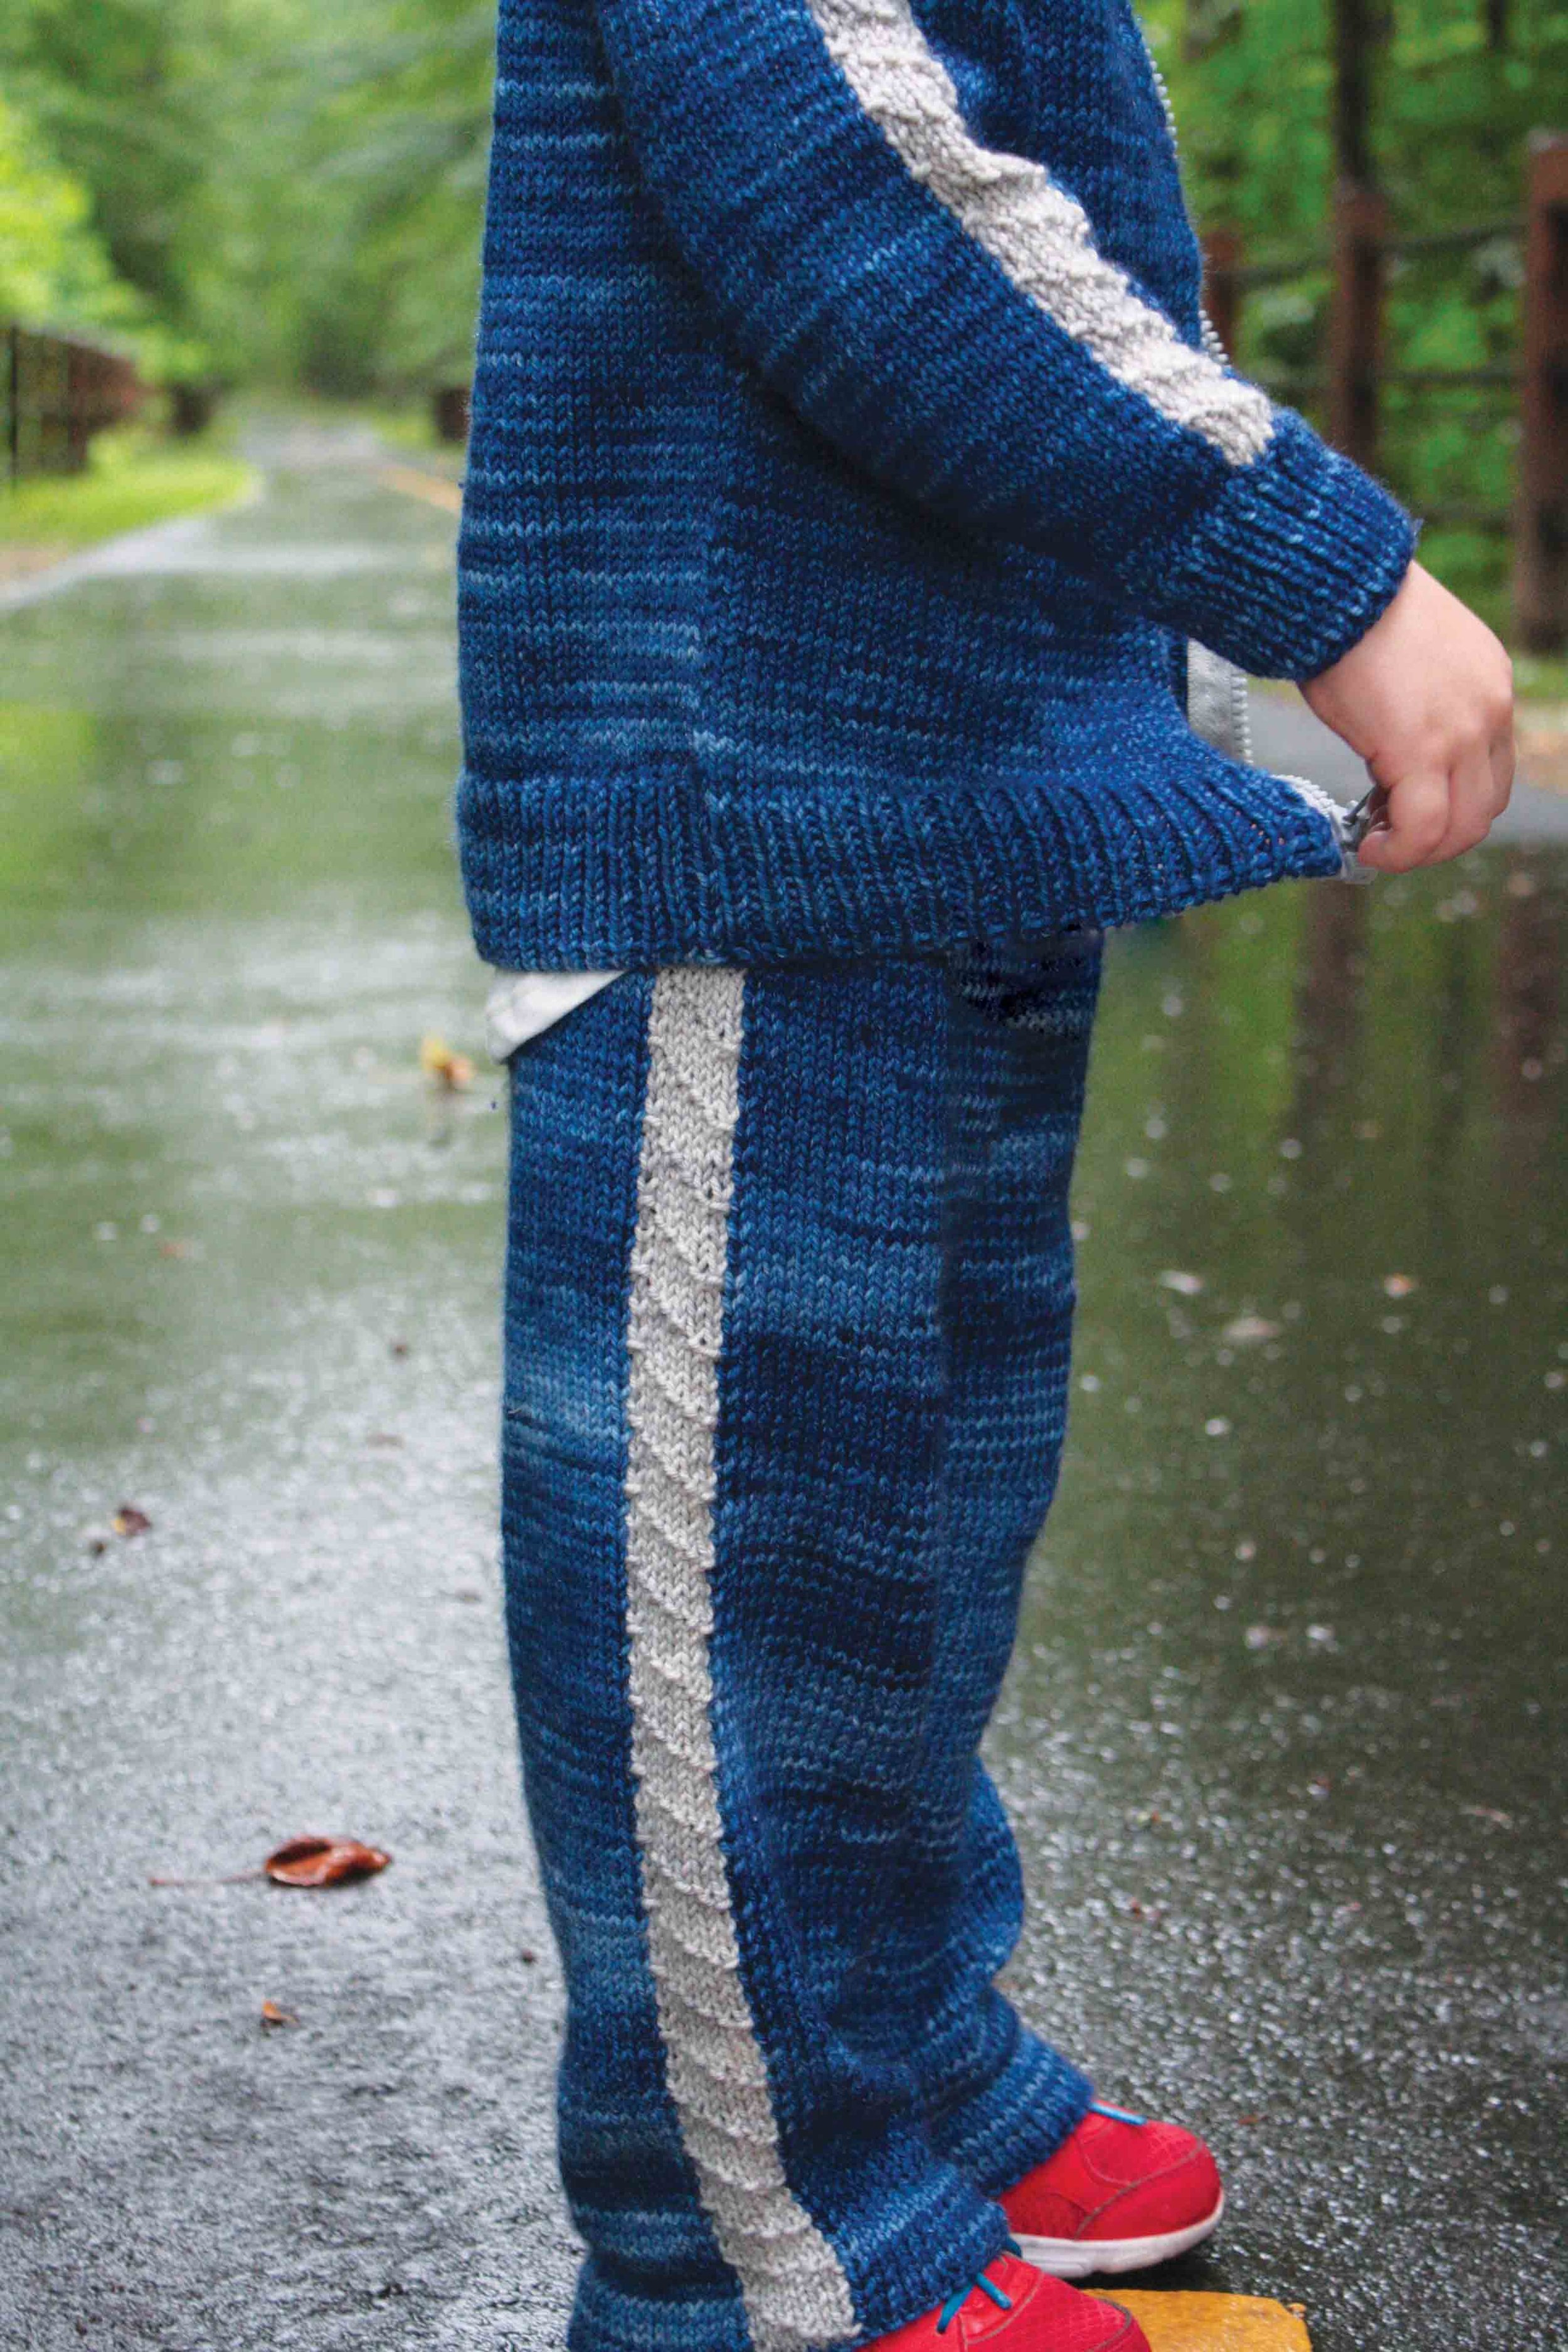 Michael Kors Men's Knit Pants Loungewear Sleepwear New Gray Size M |  eBay